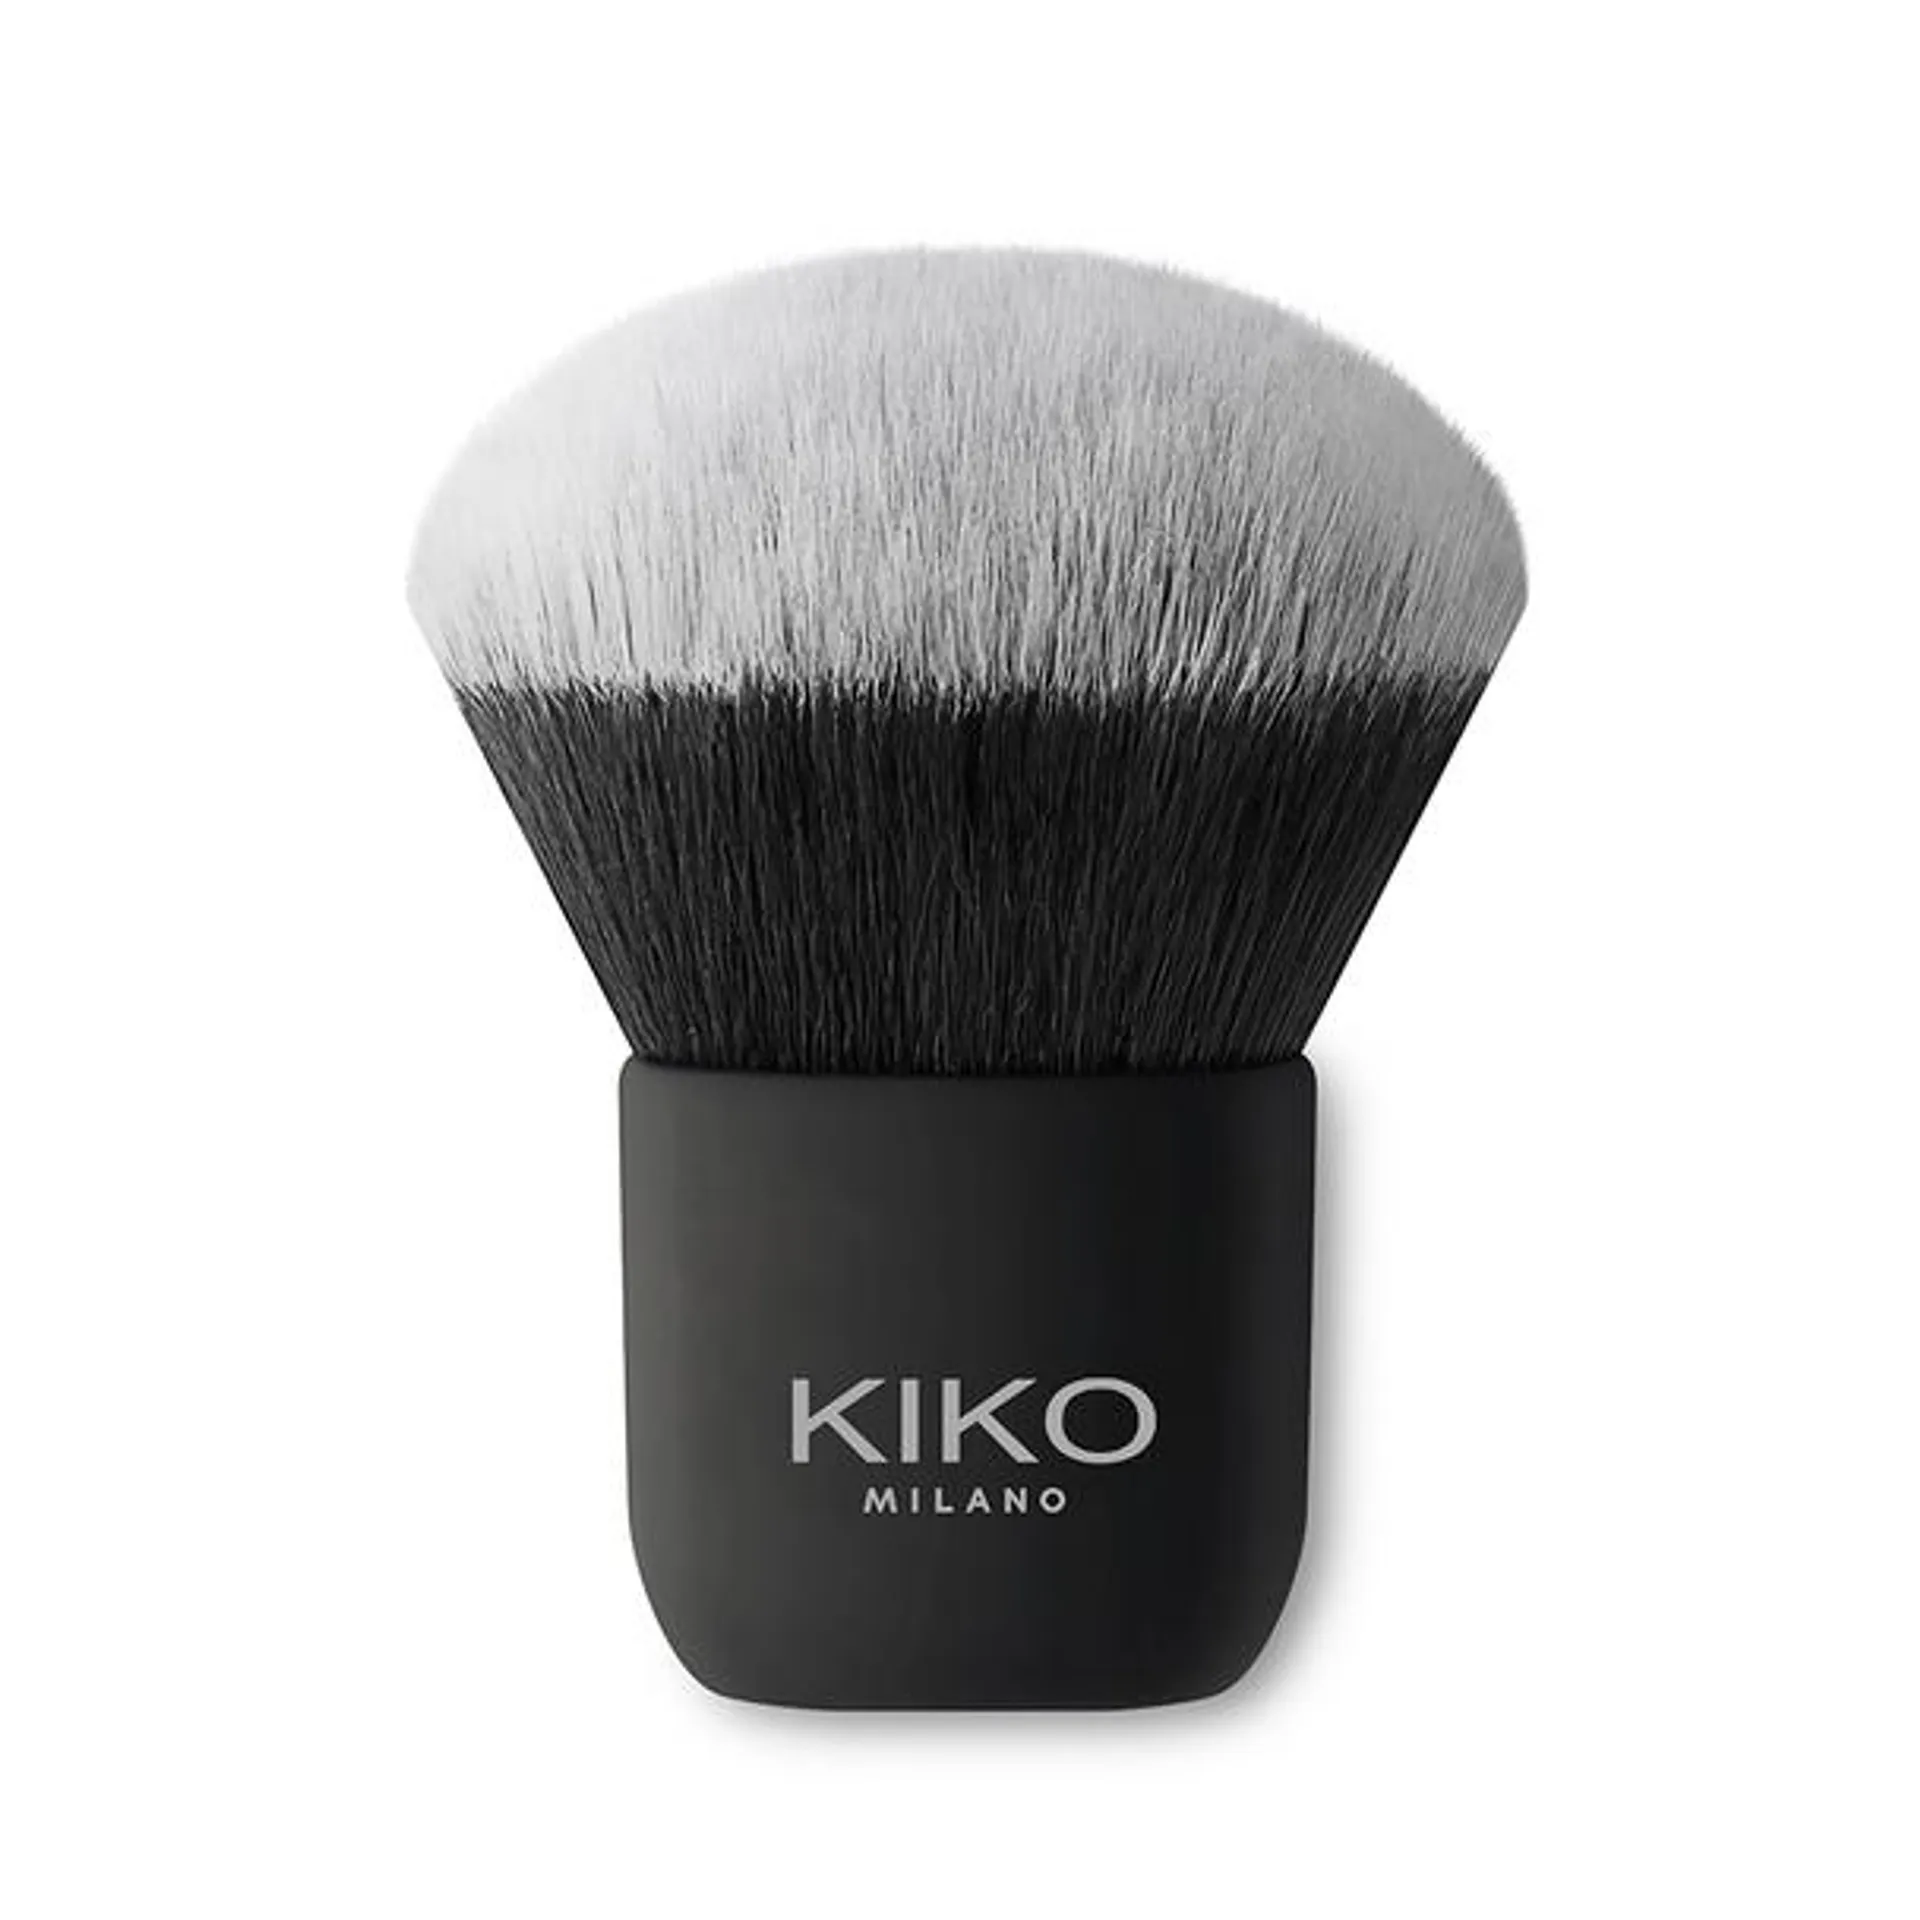 Pennello kabuki per applicare polveri viso, fibre sintetiche